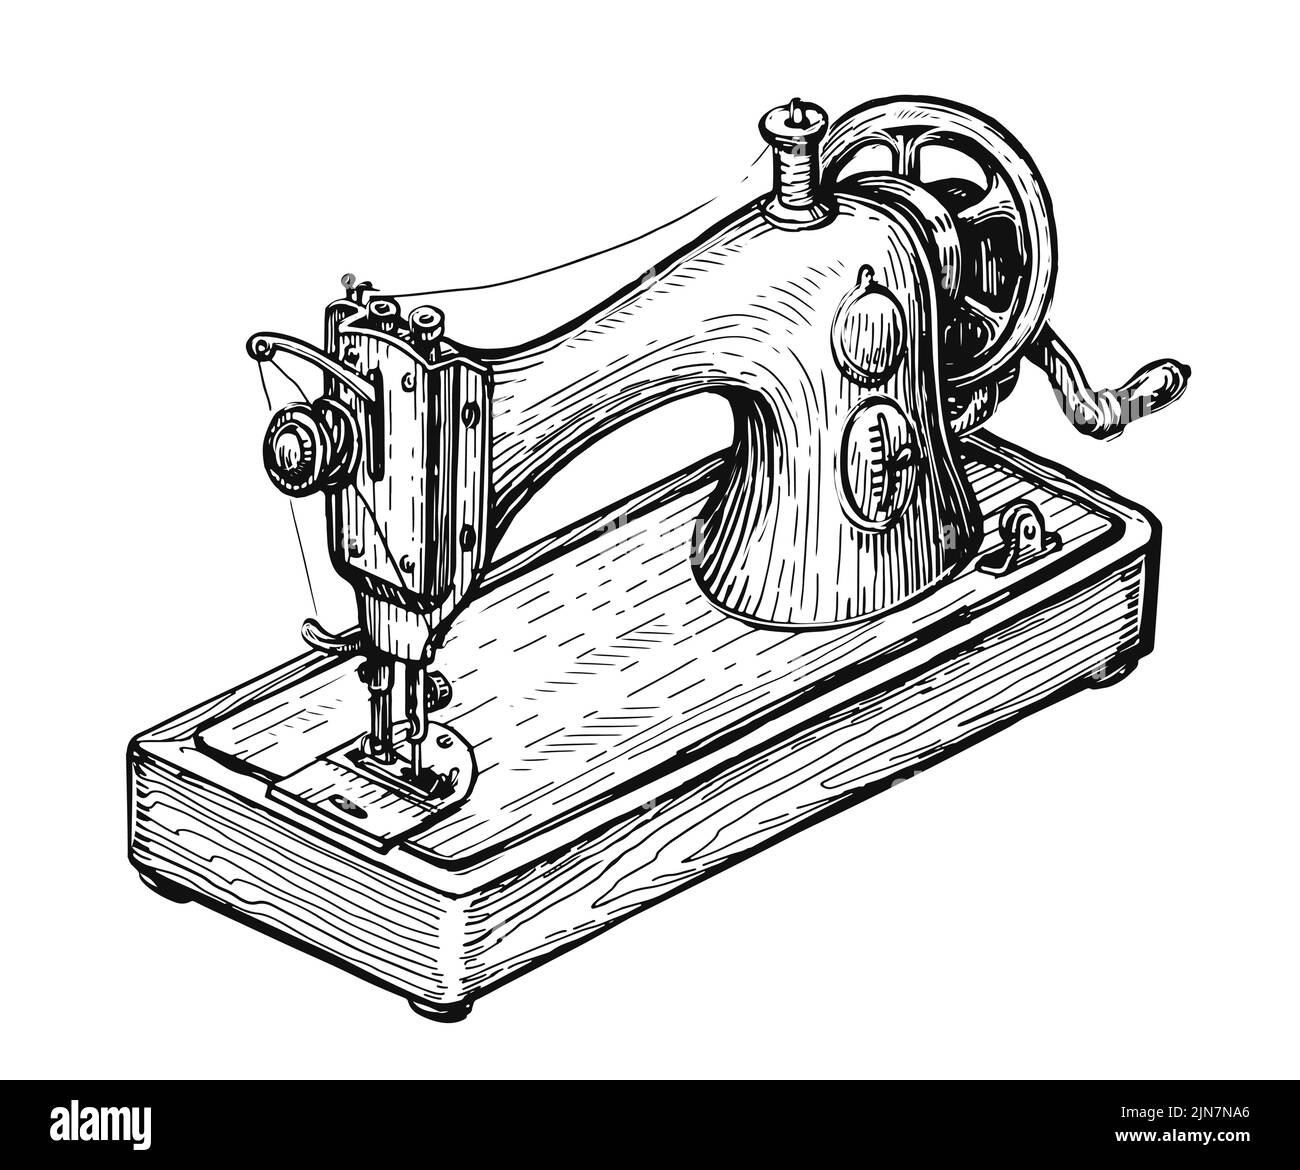 Boceto retro de la máquina de coser. Prendas de punto y costura hechas a mano, concepto de sastrería. Ilustración de vector vintage aislada Ilustración del Vector